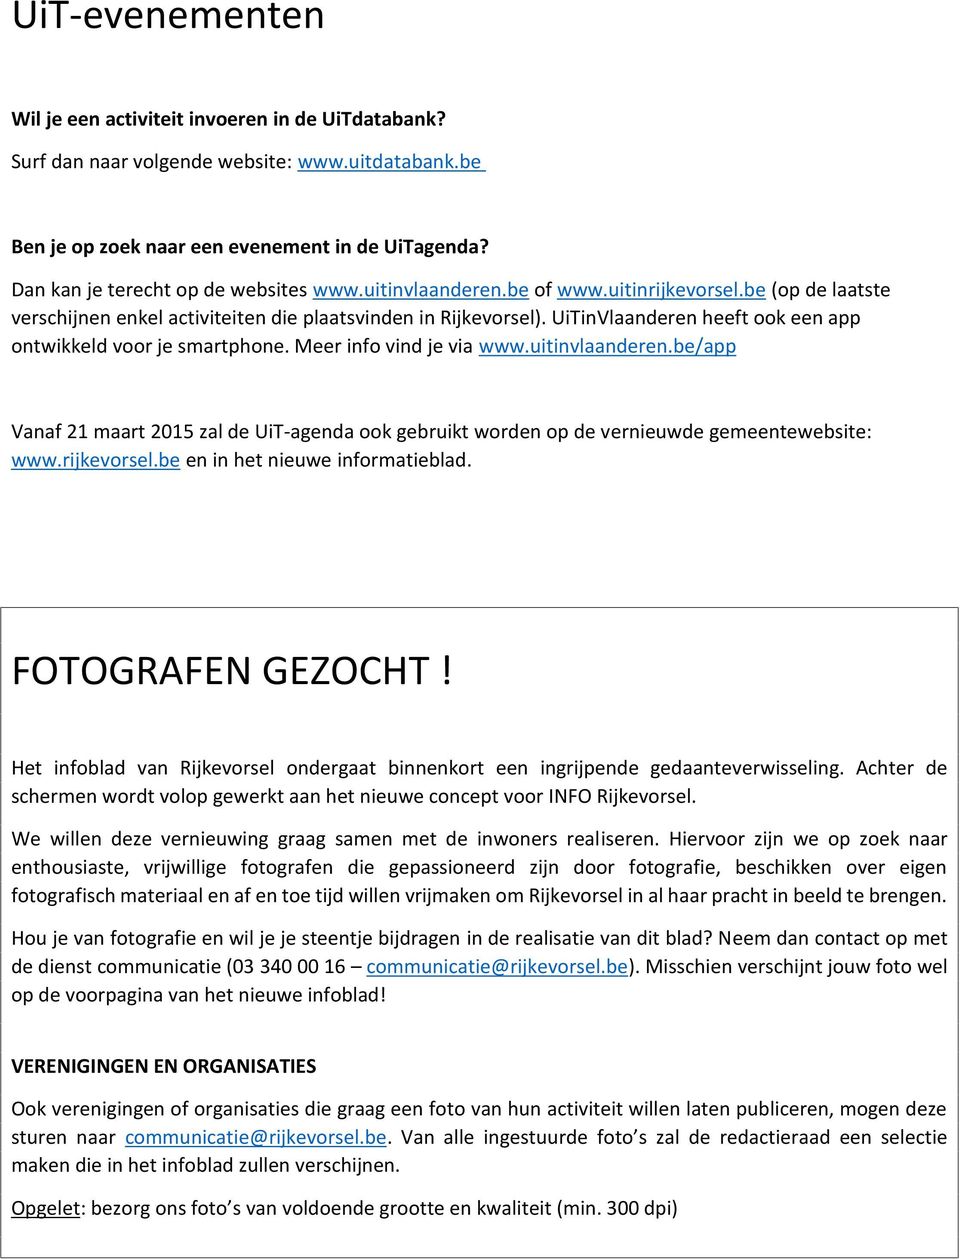 UiTinVlaanderen heeft k een app ntwikkeld vr je smartphne. Meer inf vind je via www.uitinvlaanderen.be/app Vanaf 21 maart 2015 zal de UiT-agenda k gebruikt wrden p de vernieuwde gemeentewebsite: www.